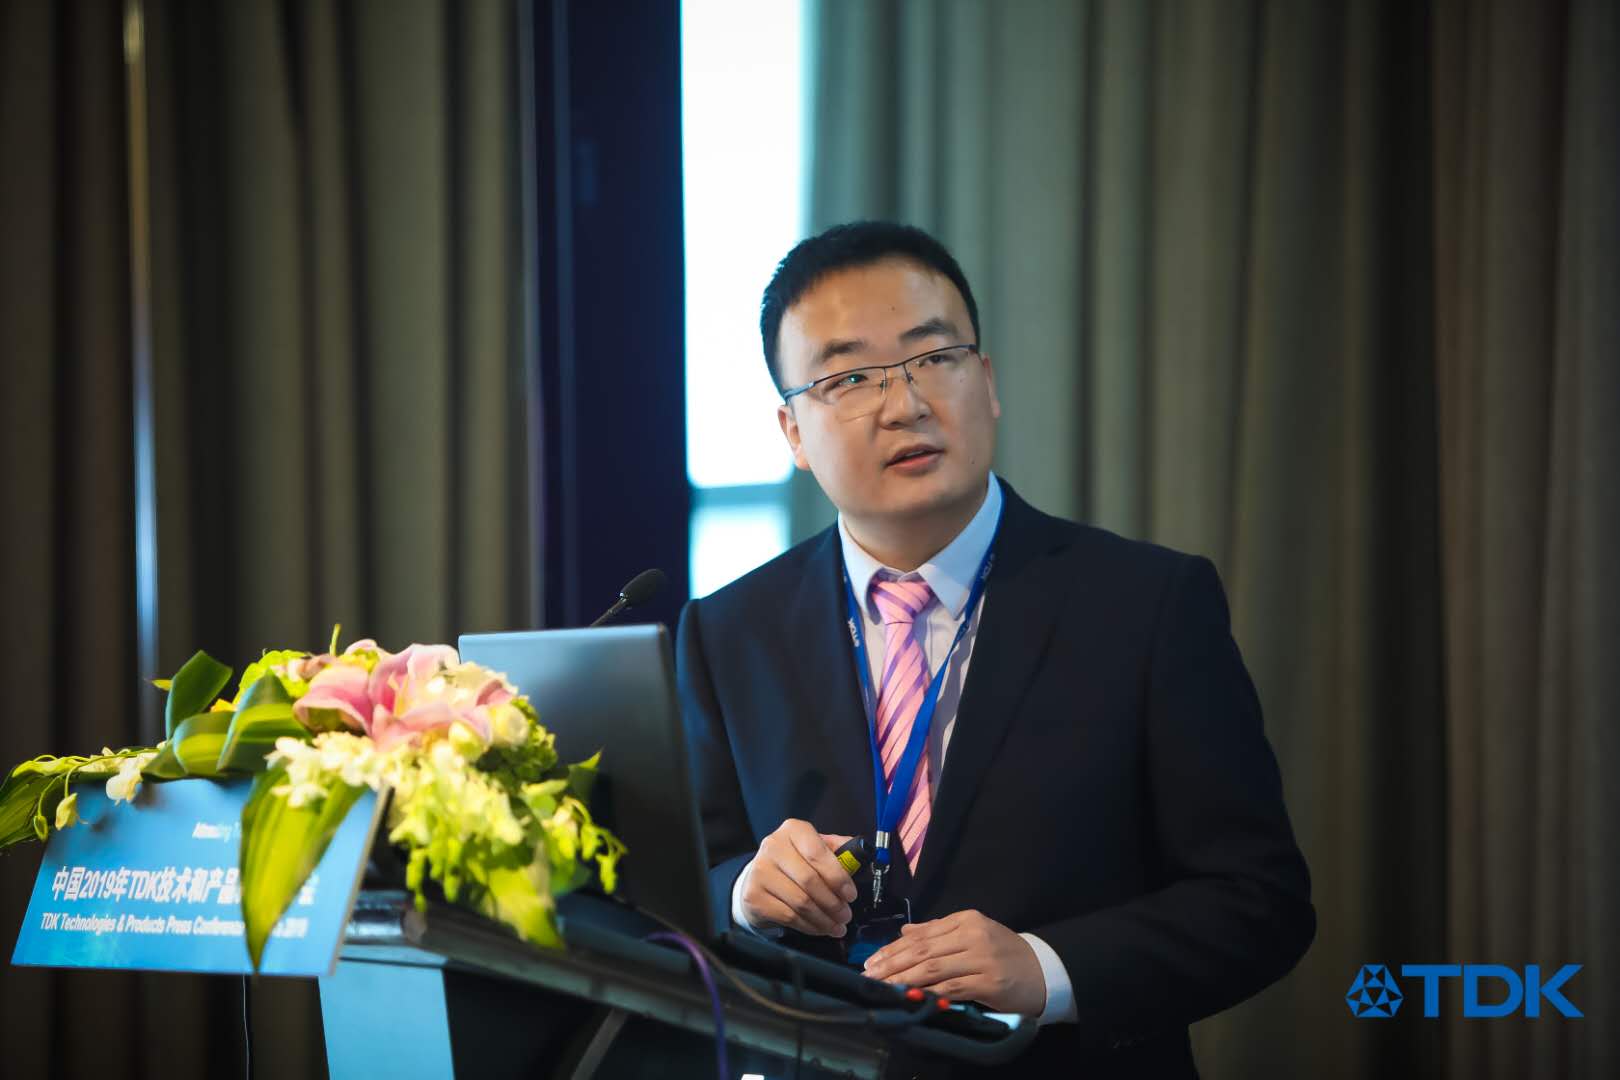 TDK电子大中华区铝电解产品市场部经理王涛先生